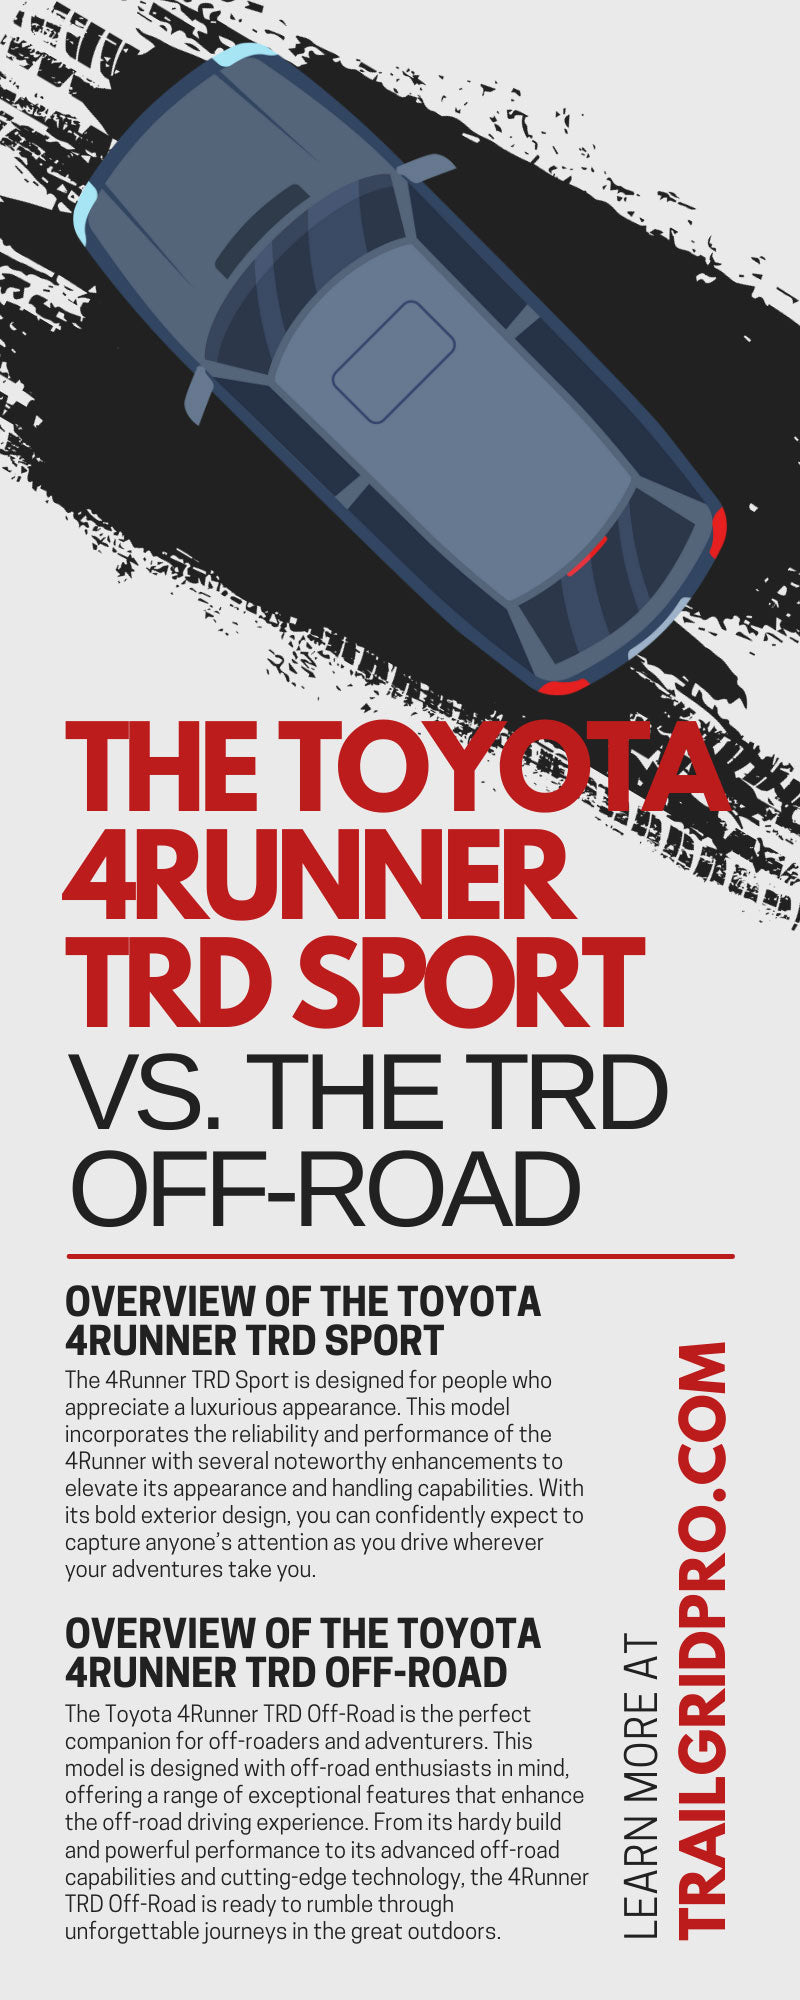 The Toyota 4Runner TRD Sport vs. the TRD Off-Road